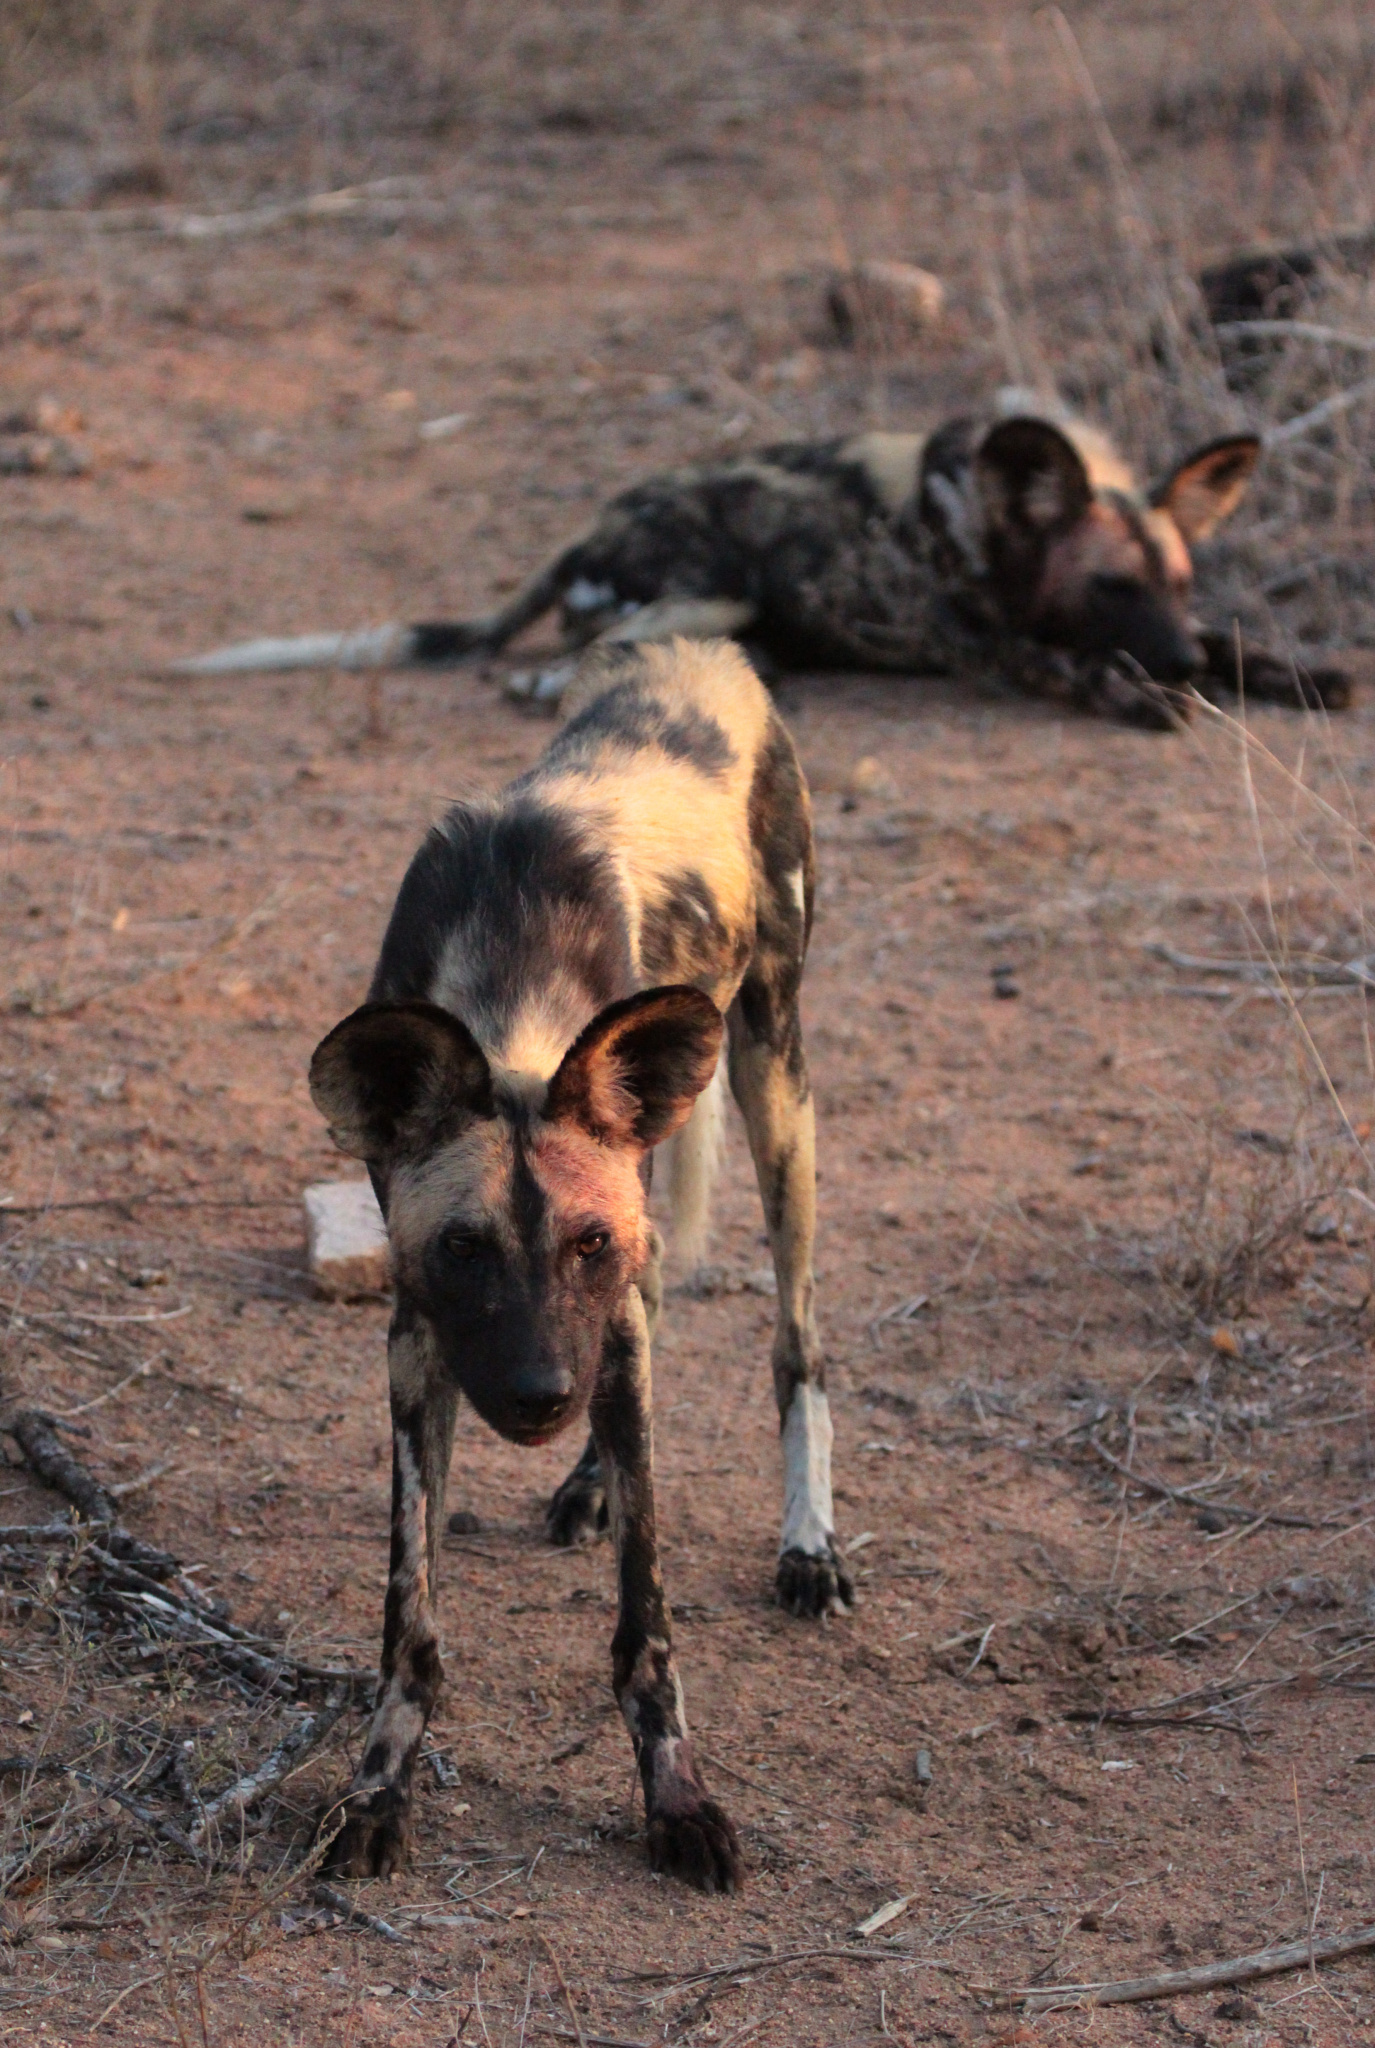 Fotoexpedition zu den afrikanischen Wildhunden - die schwer fassbaren Schatten Afrikas